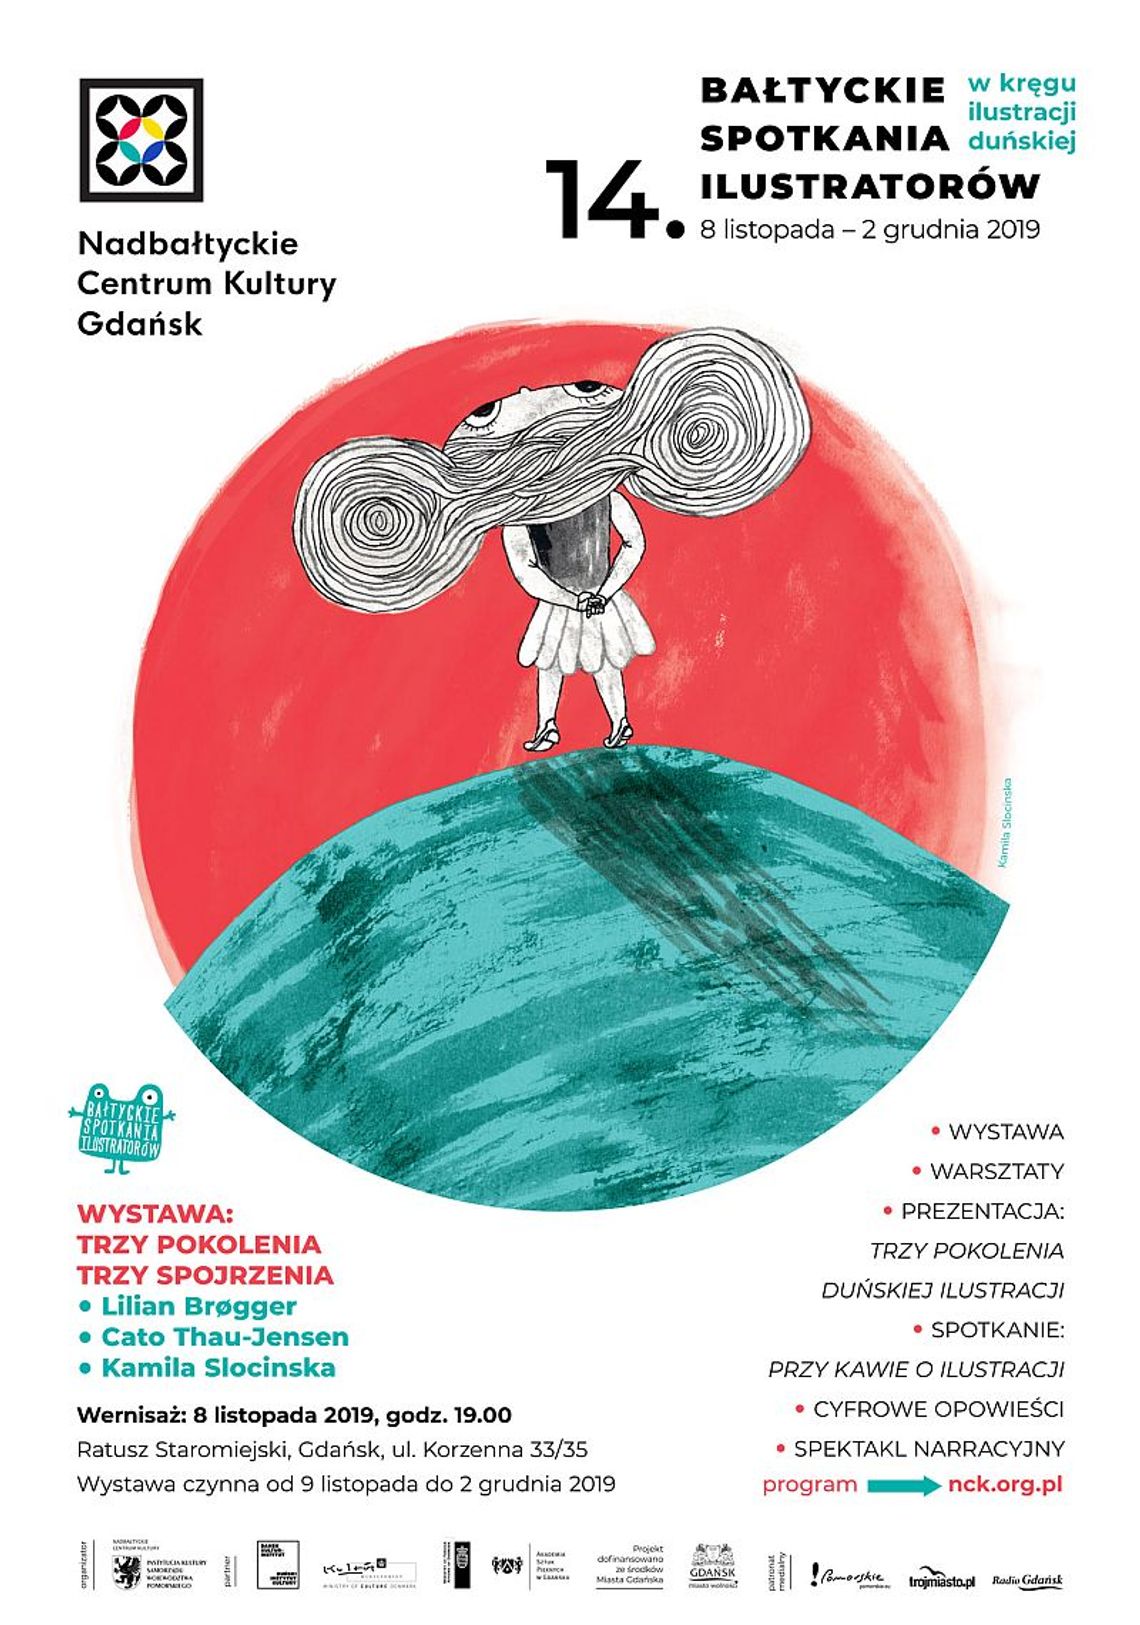 Bałtyckie Spotkania Ilustratorów - książki, design i rodzicielstwo